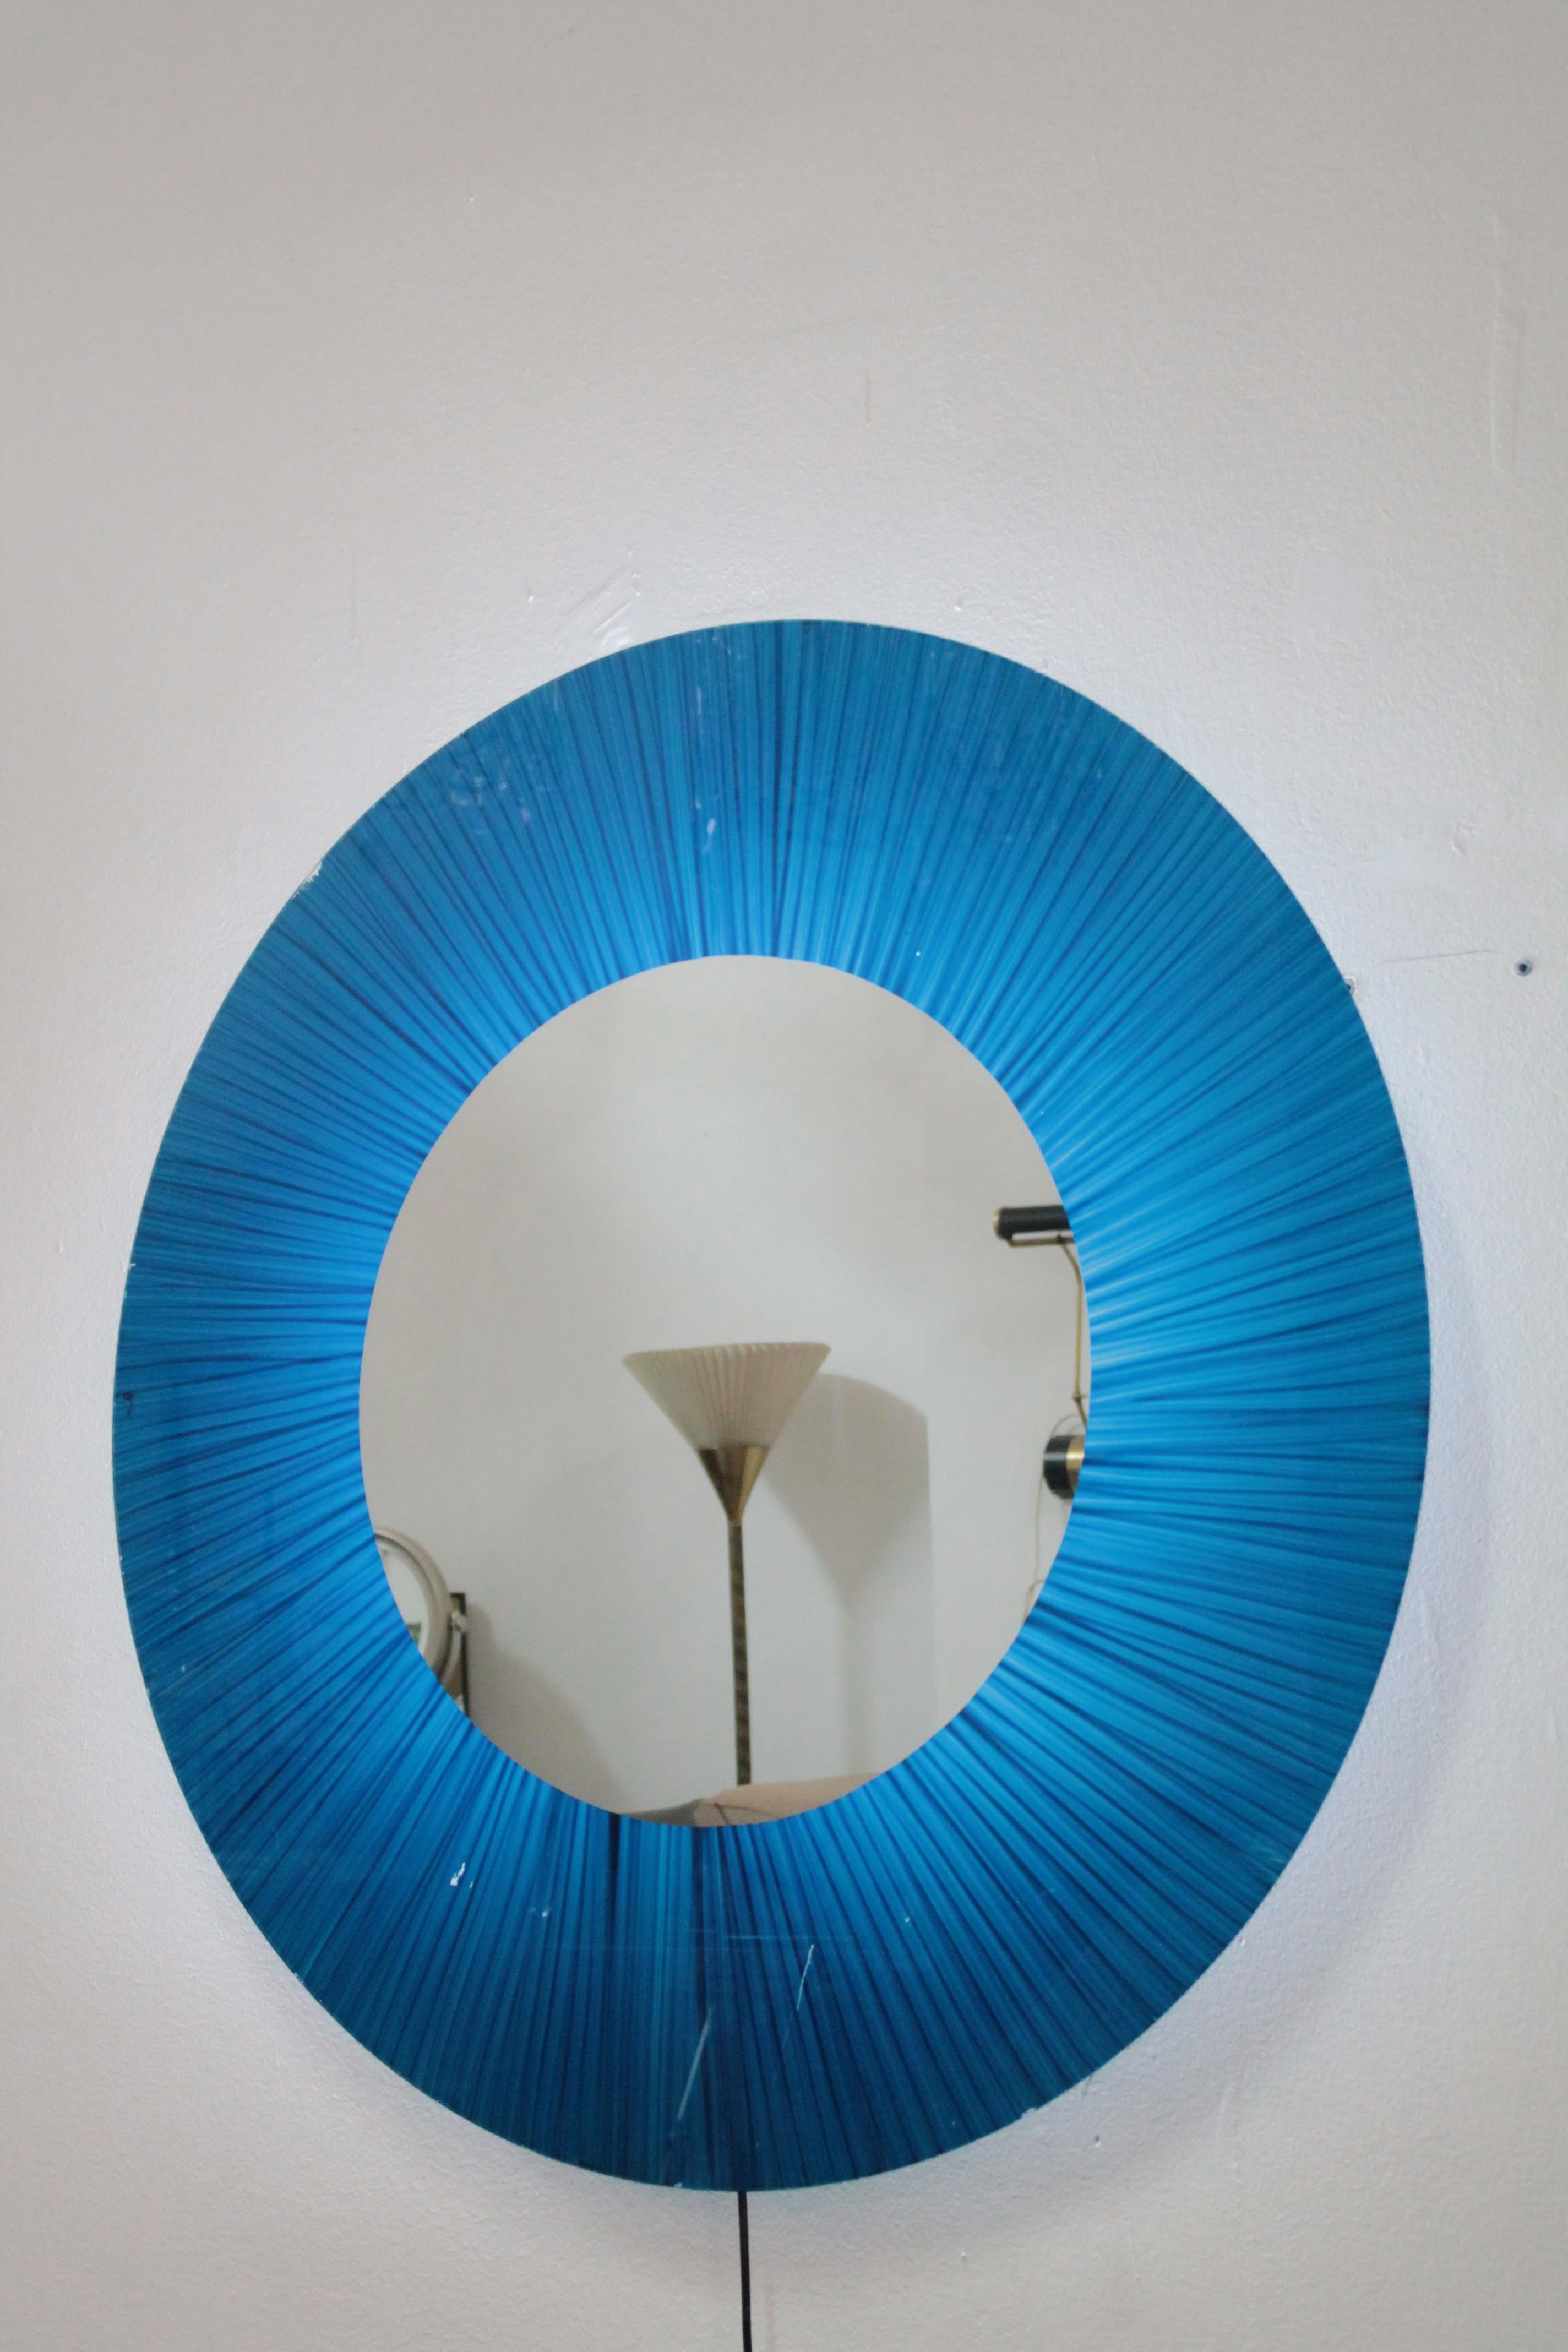 Big Italian Round Illuminated Mirror 1970s Artglass Cristal Art Style For Sale 5